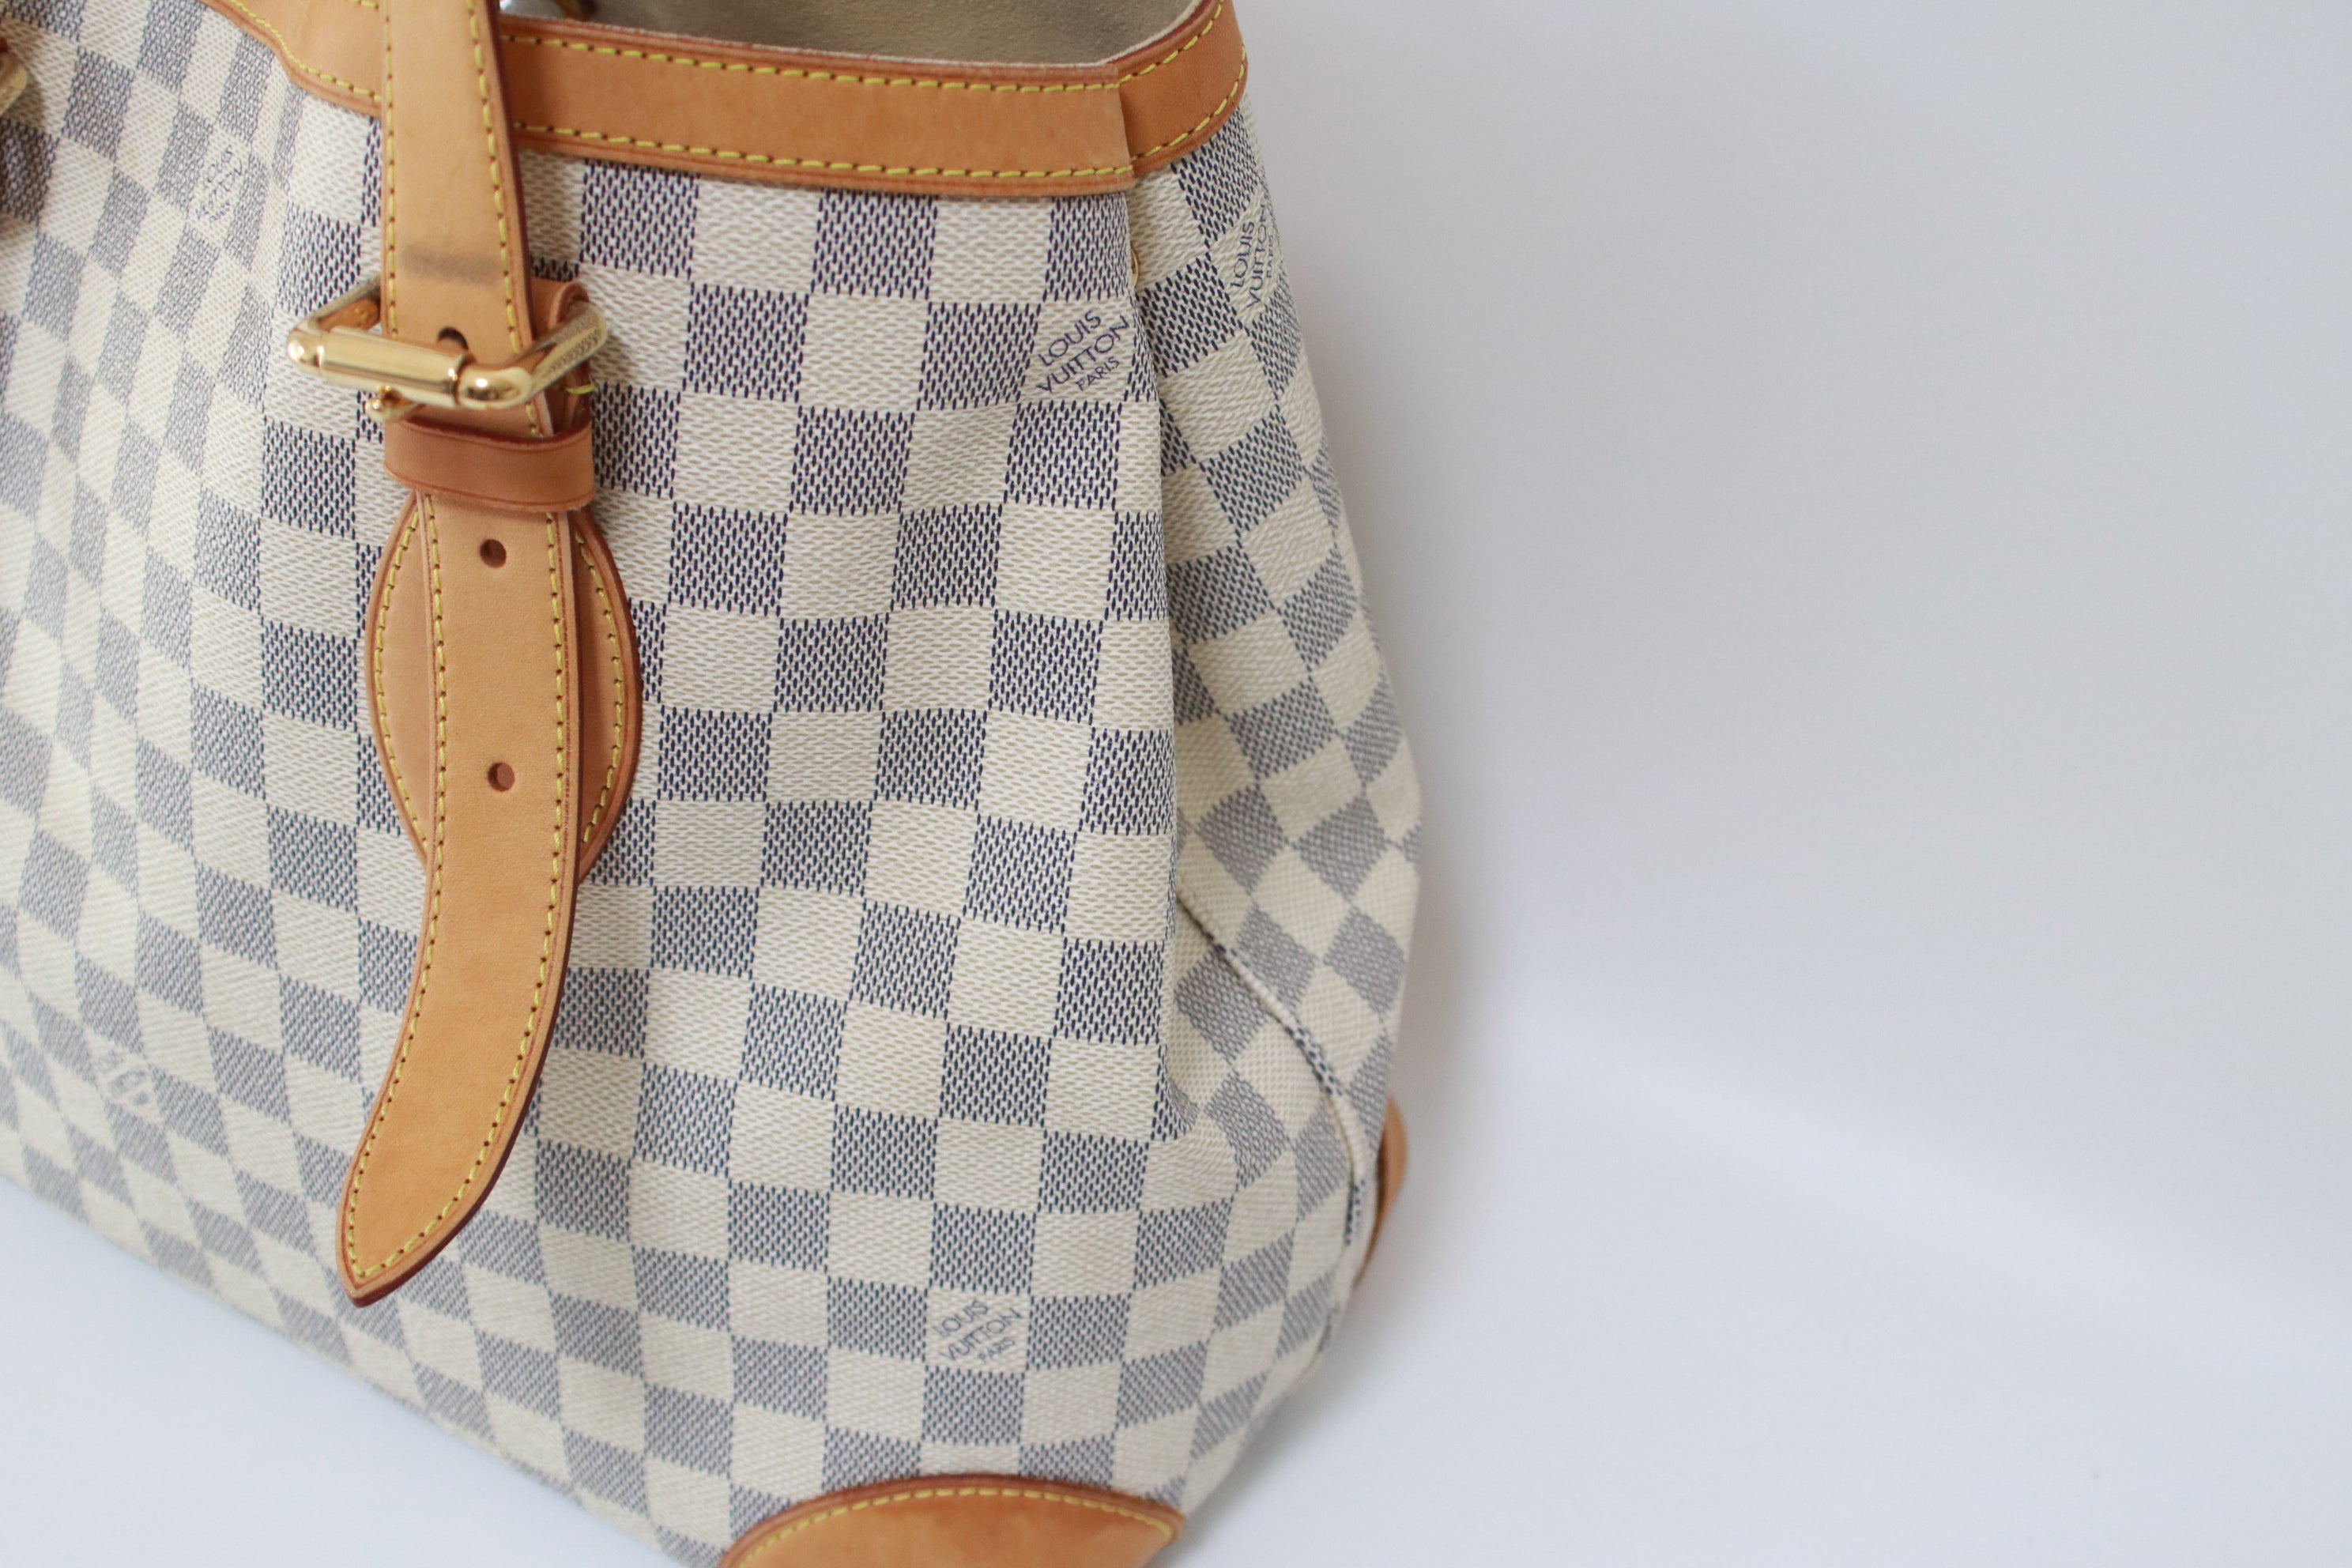 Louis Vuitton Hampstead MM Damier Azur Shoulder Bag Used (6910)